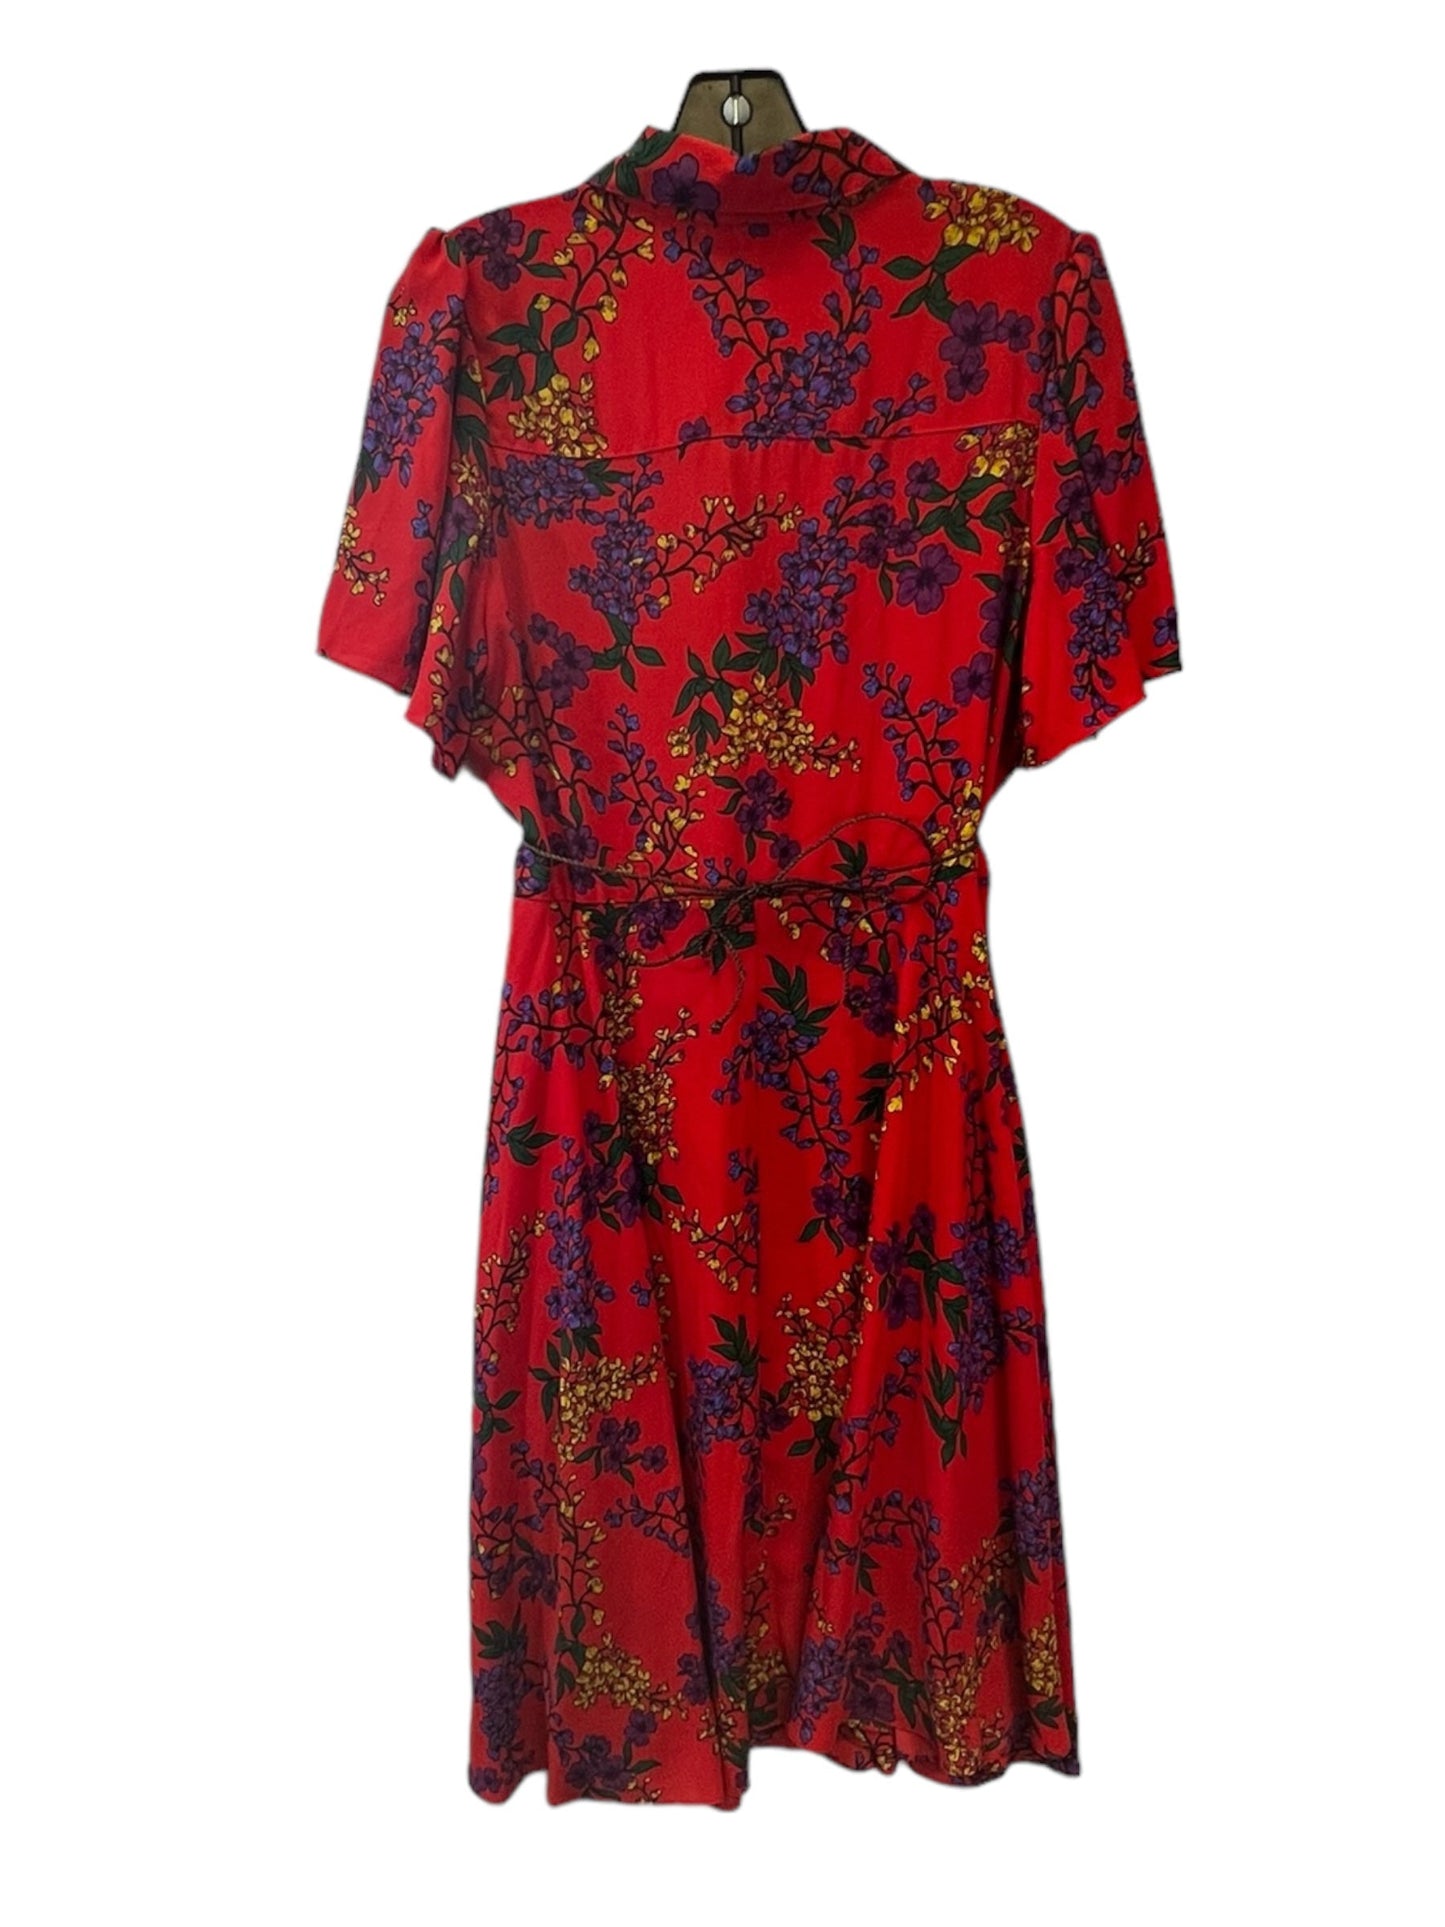 Floral Print Dress Designer Nanette Lepore, Size 10